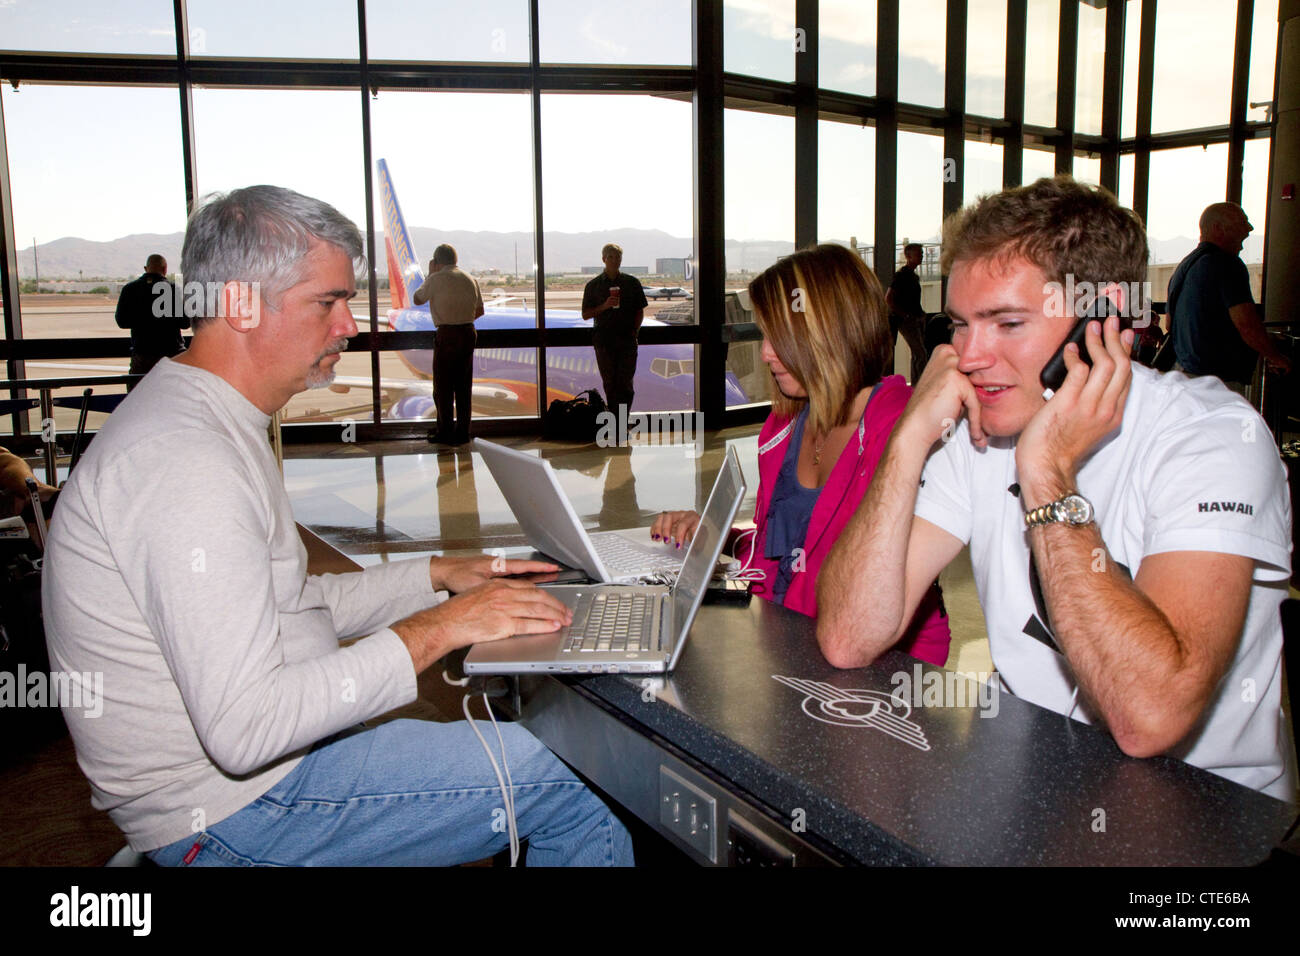 La gente utiliza Internet wi-fi en el Aeropuerto Internacional Phoenix Sky Harbor, ubicado en la ciudad de Phoenix, Arizona, EE.UU. Foto de stock